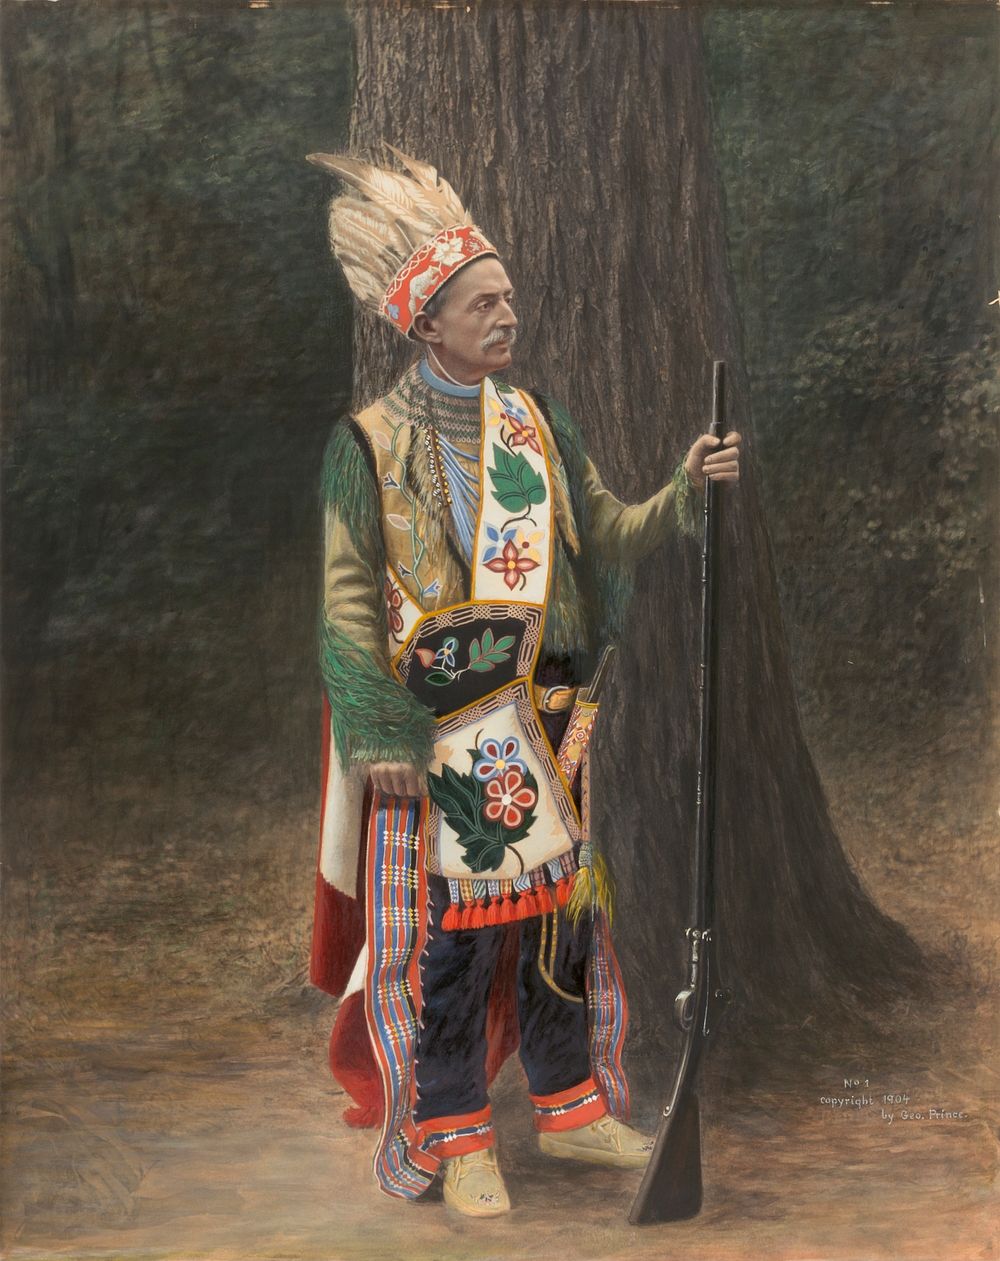 White Man in Chippewa Costume, George Prince